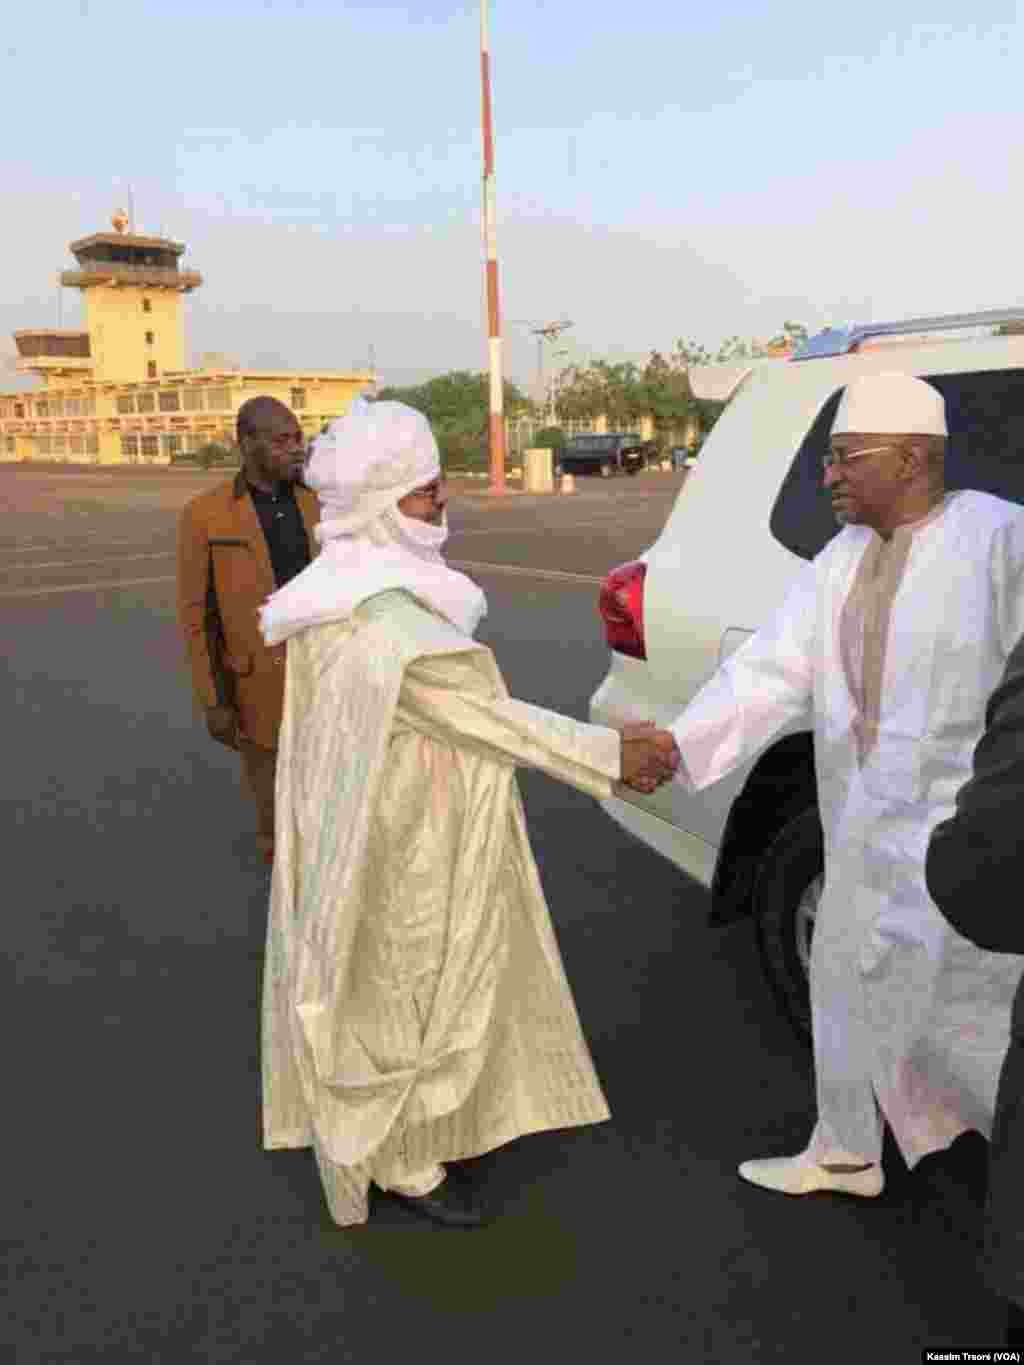 Le Premier ministre malien, Soumeylou Boubeye Maïga, en visite à Tessalit, le 22 mars 2018. (VOA/Kassim Traoré)